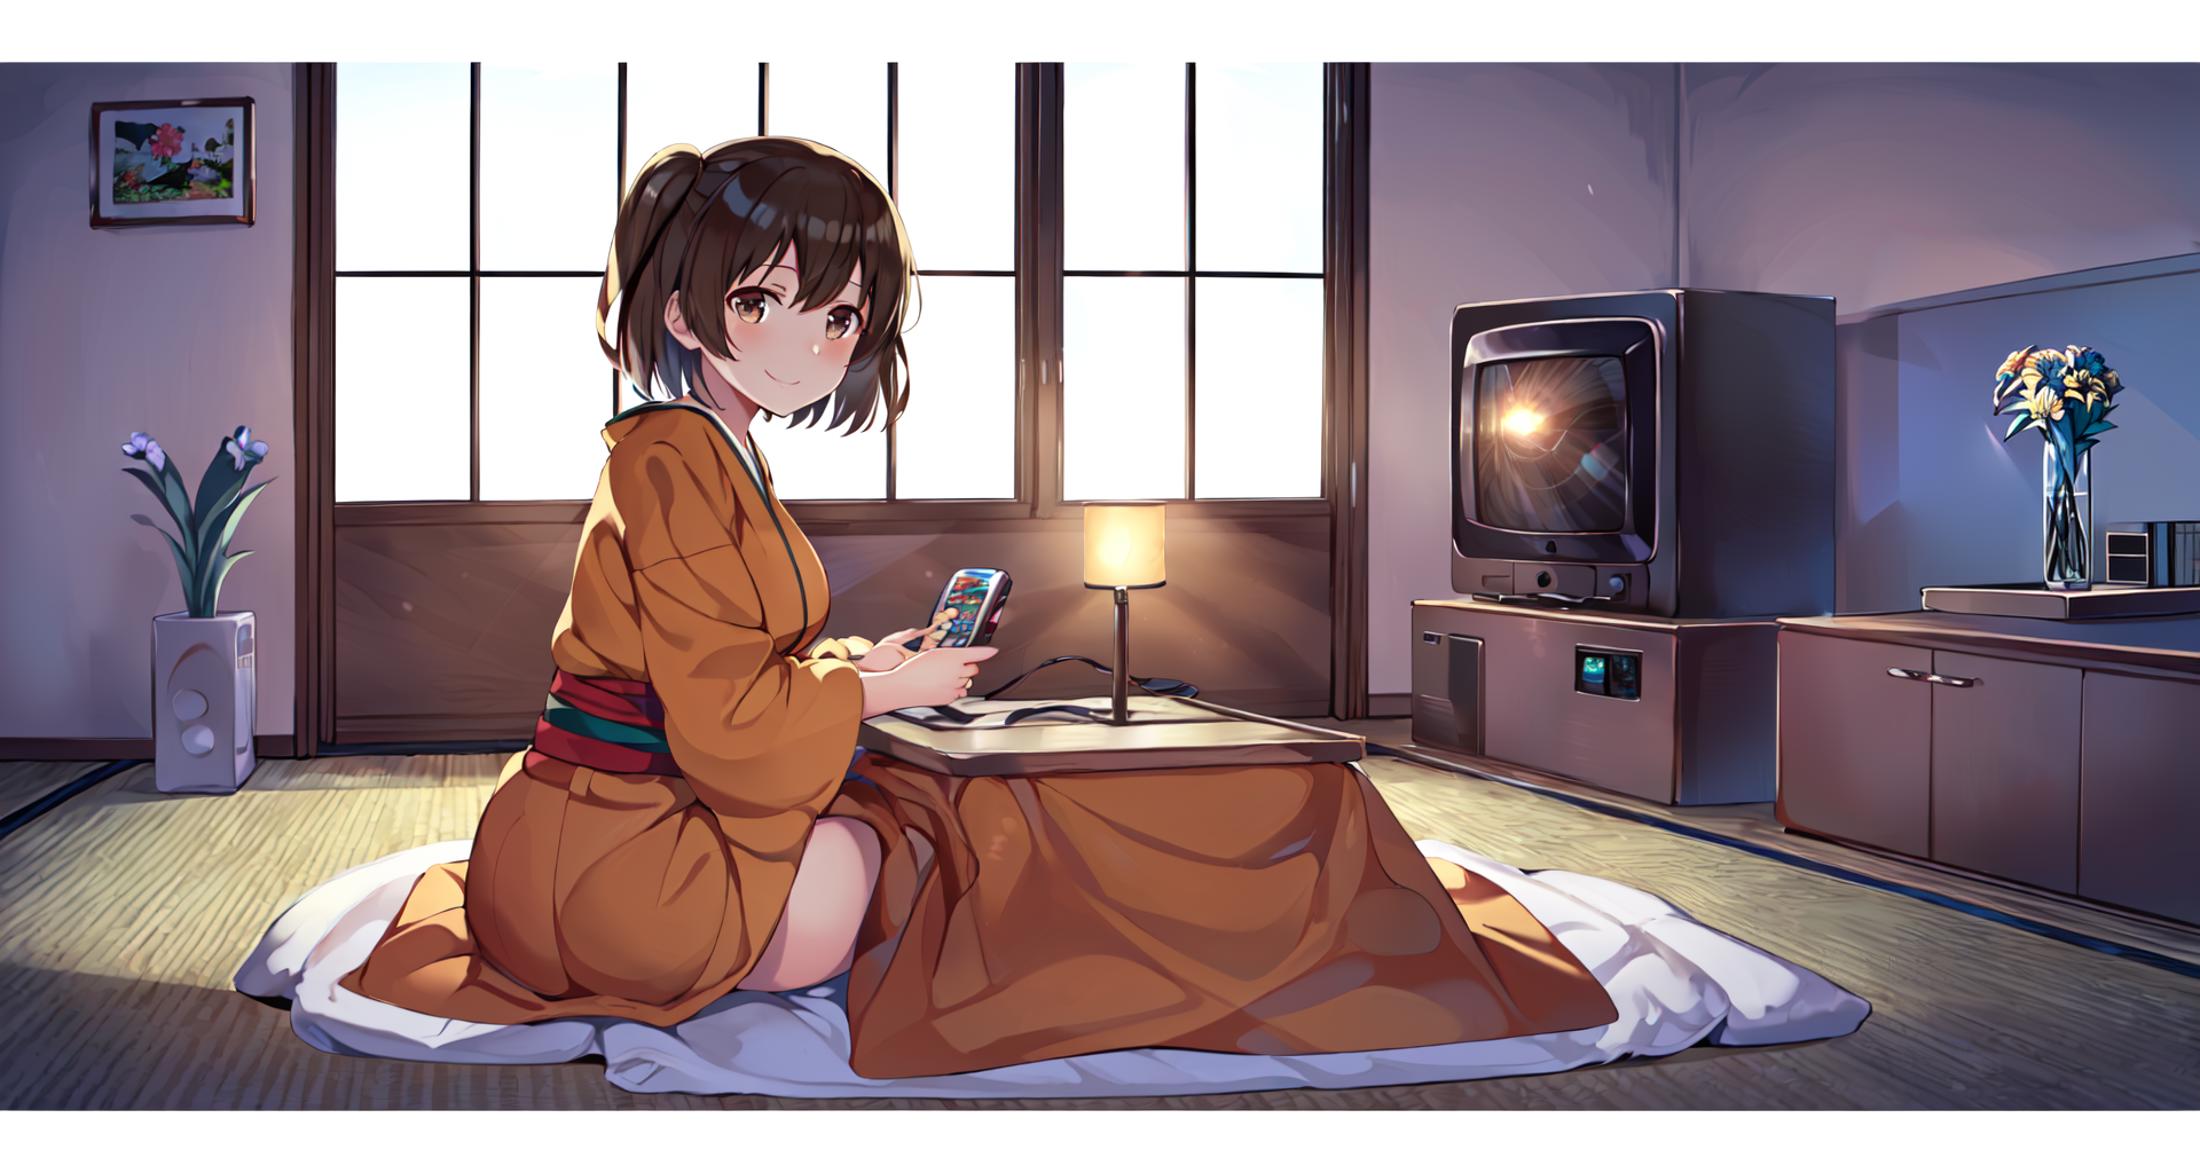 Kotatsu sitting at kotatsu | under kotatsu image by Machi